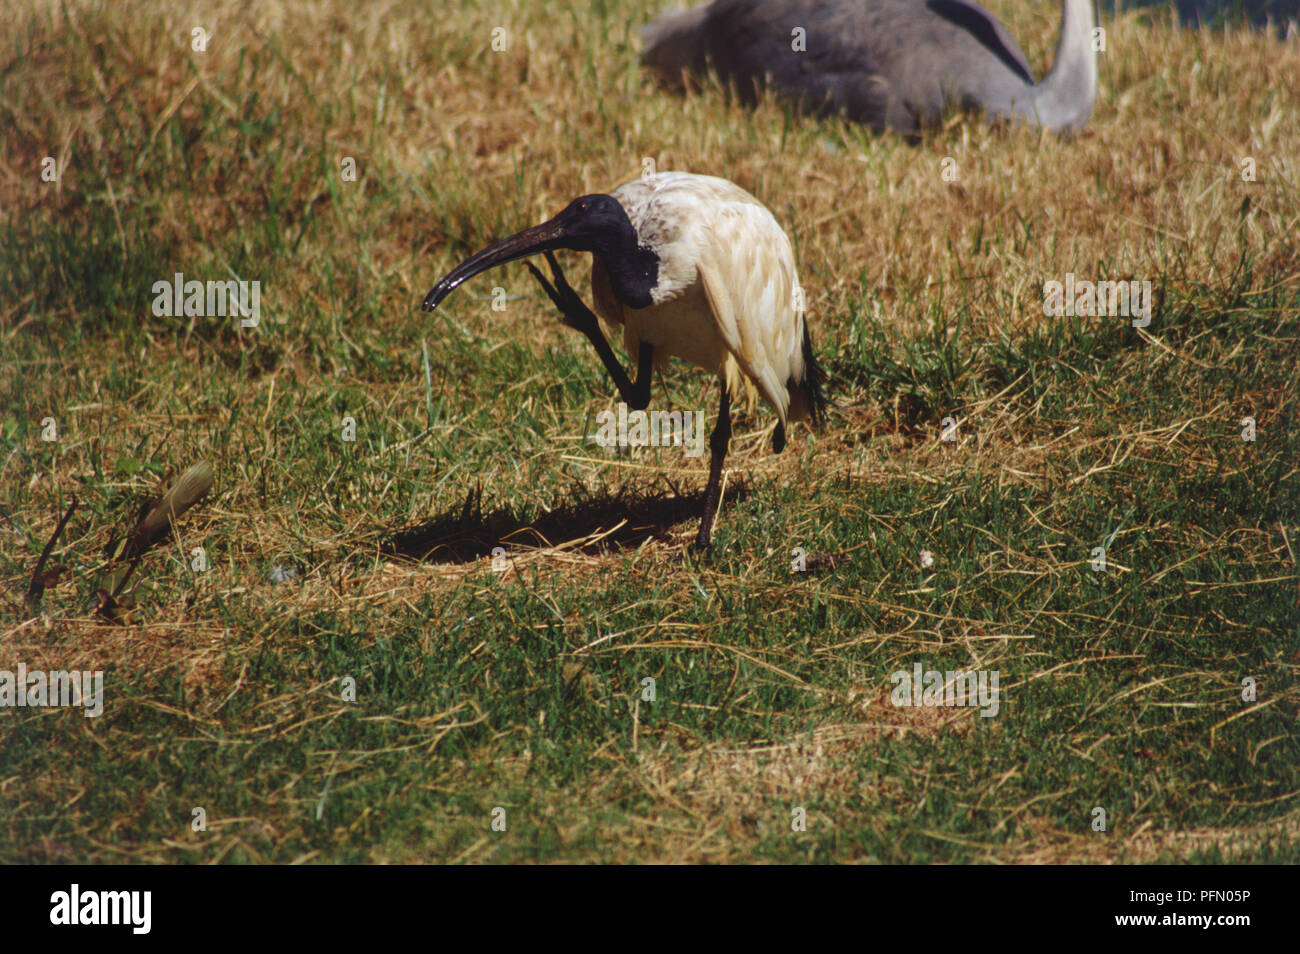 Ibis, il piumaggio bruno, nero il collo e la testa è in piedi su una gamba nella prateria aperta, graffiare la sua distinta con il suo piede, vista laterale. Foto Stock